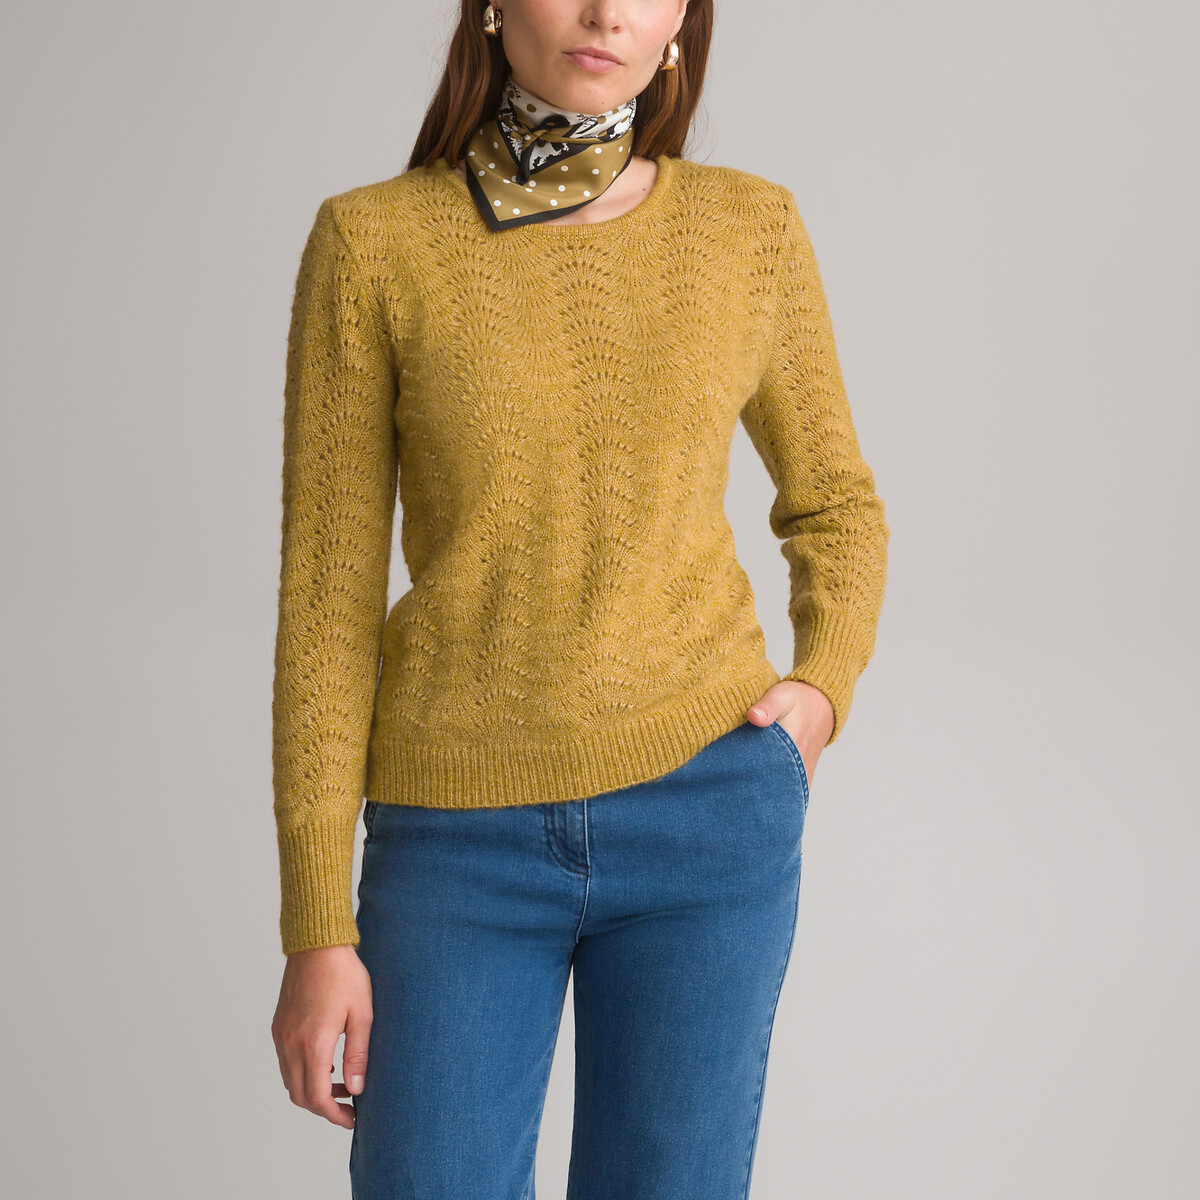 Пуловер с круглым вырезом из тонкого ажурного трикотажа 42/44 (FR) - 48/50 (RUS) желтый худи с капюшоном из тонкого трикотажа 42 44 fr 48 50 rus каштановый